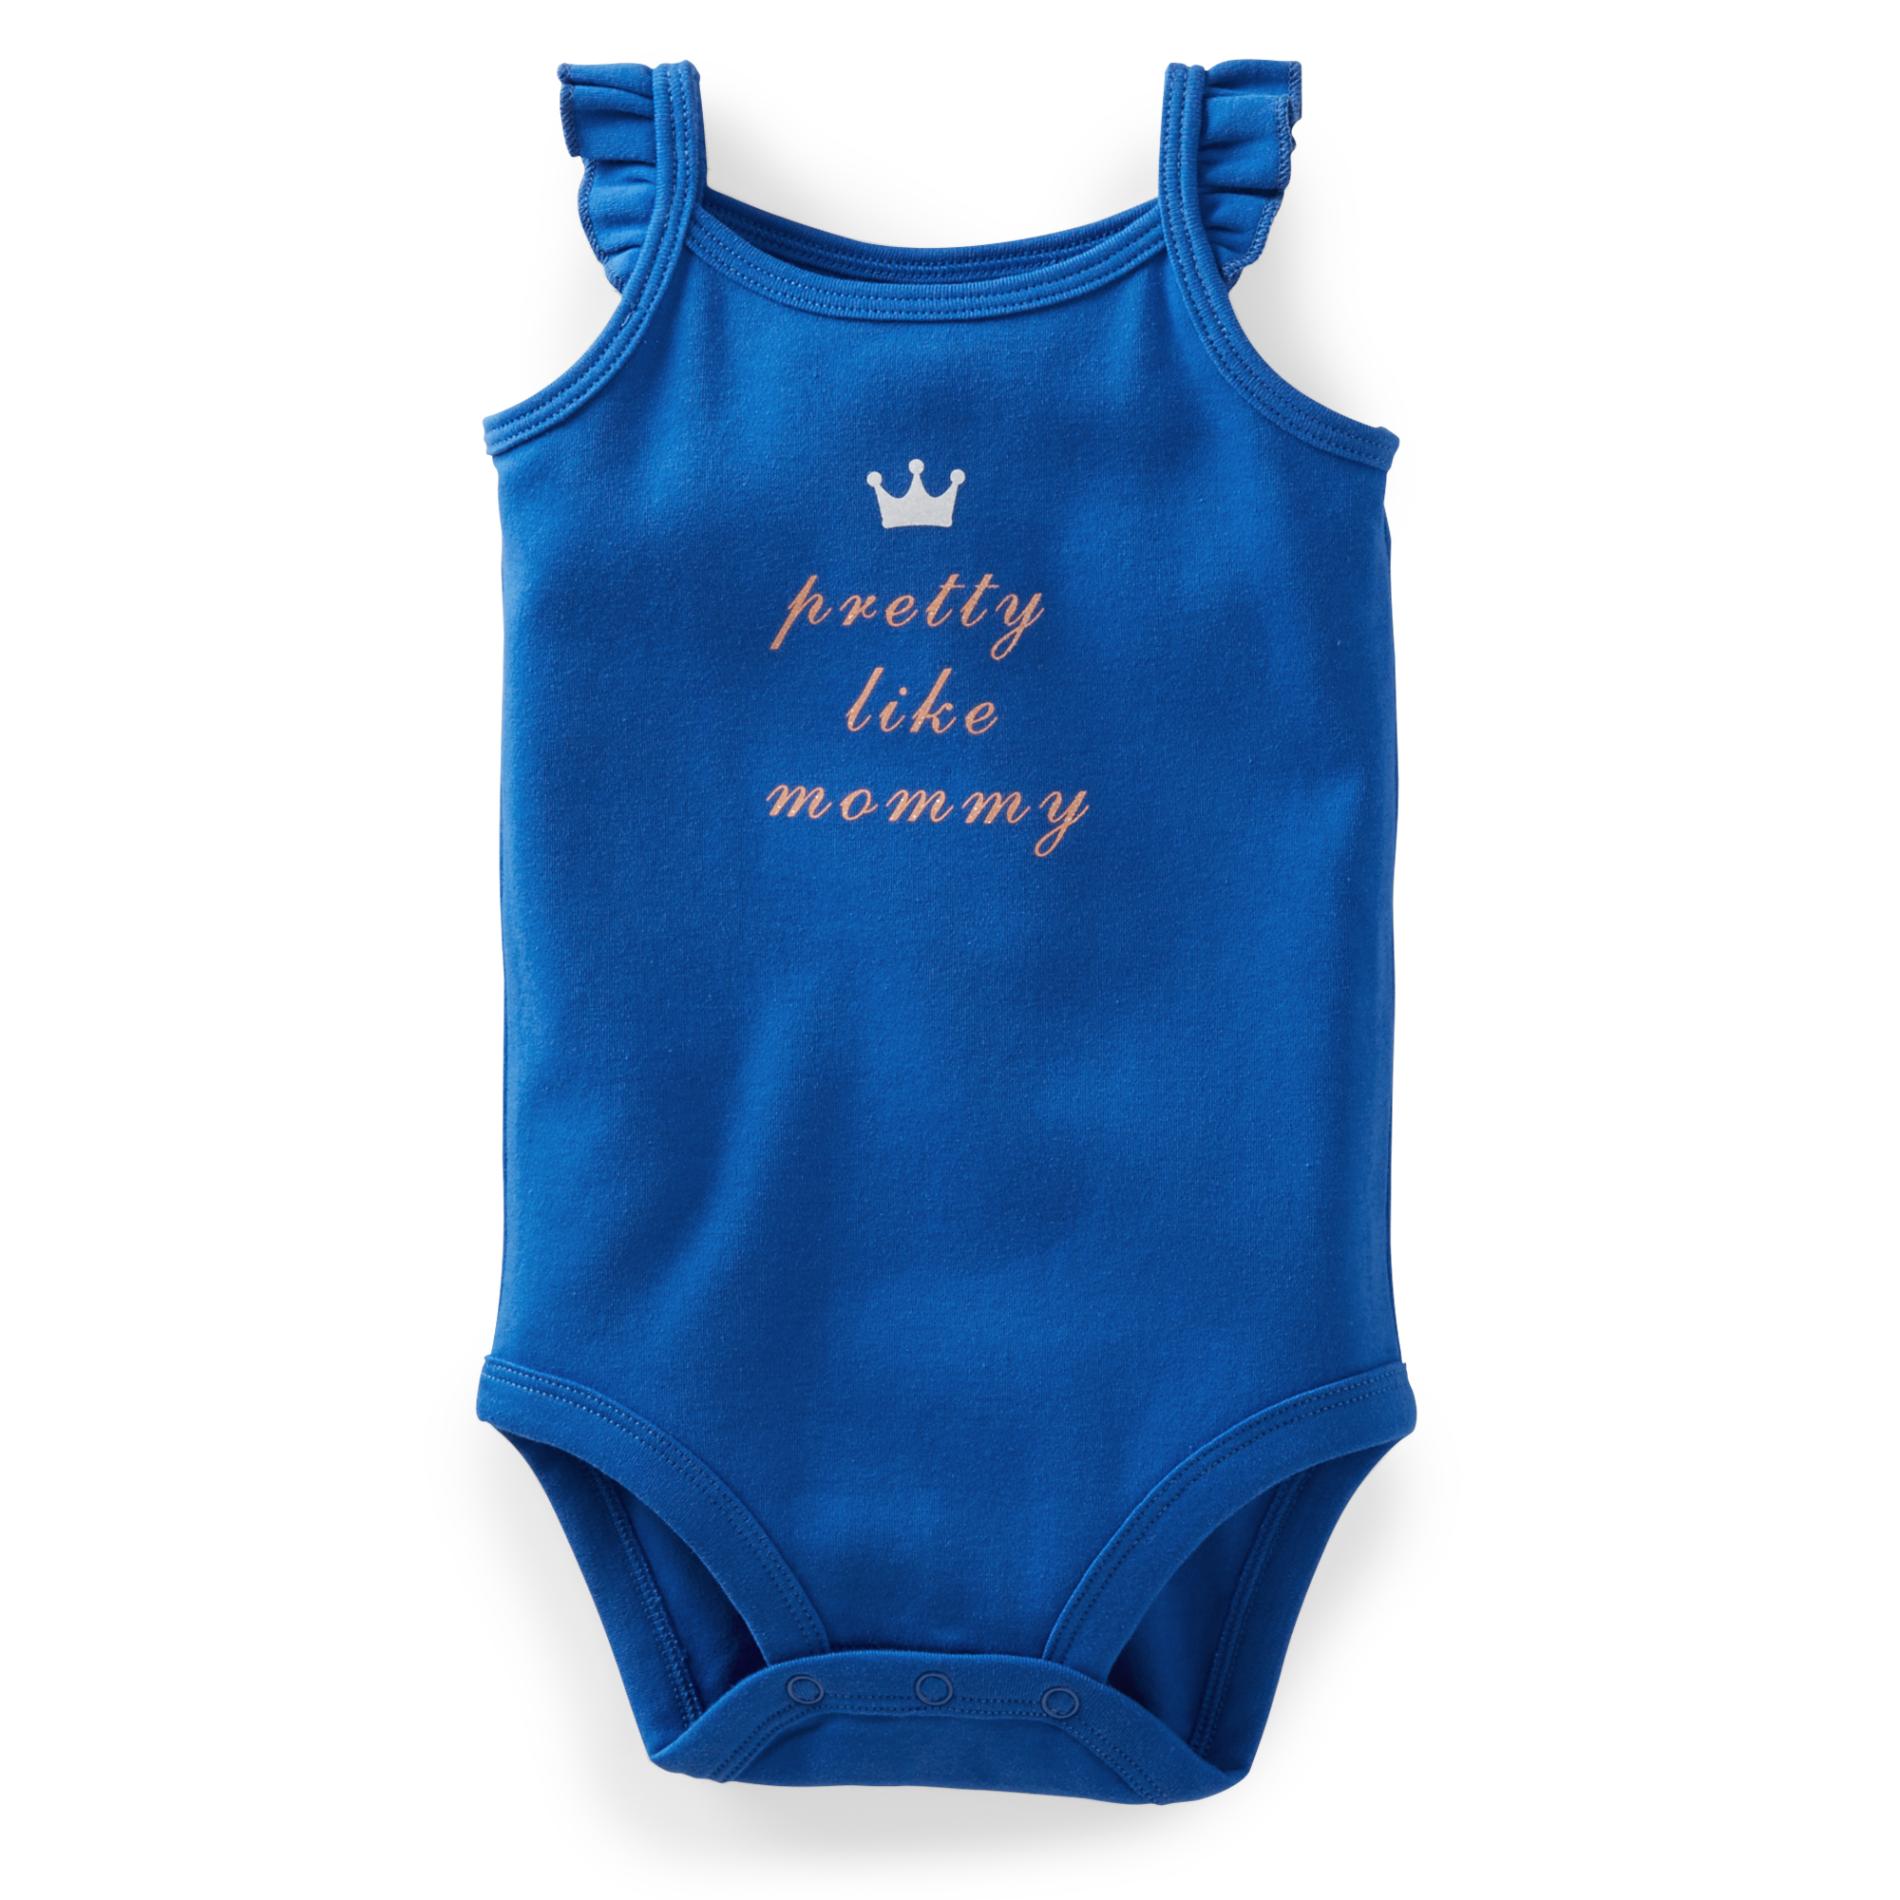 Carter's Newborn & Infant Girl's Sleeveless Bodysuit - Pretty Like Mommy